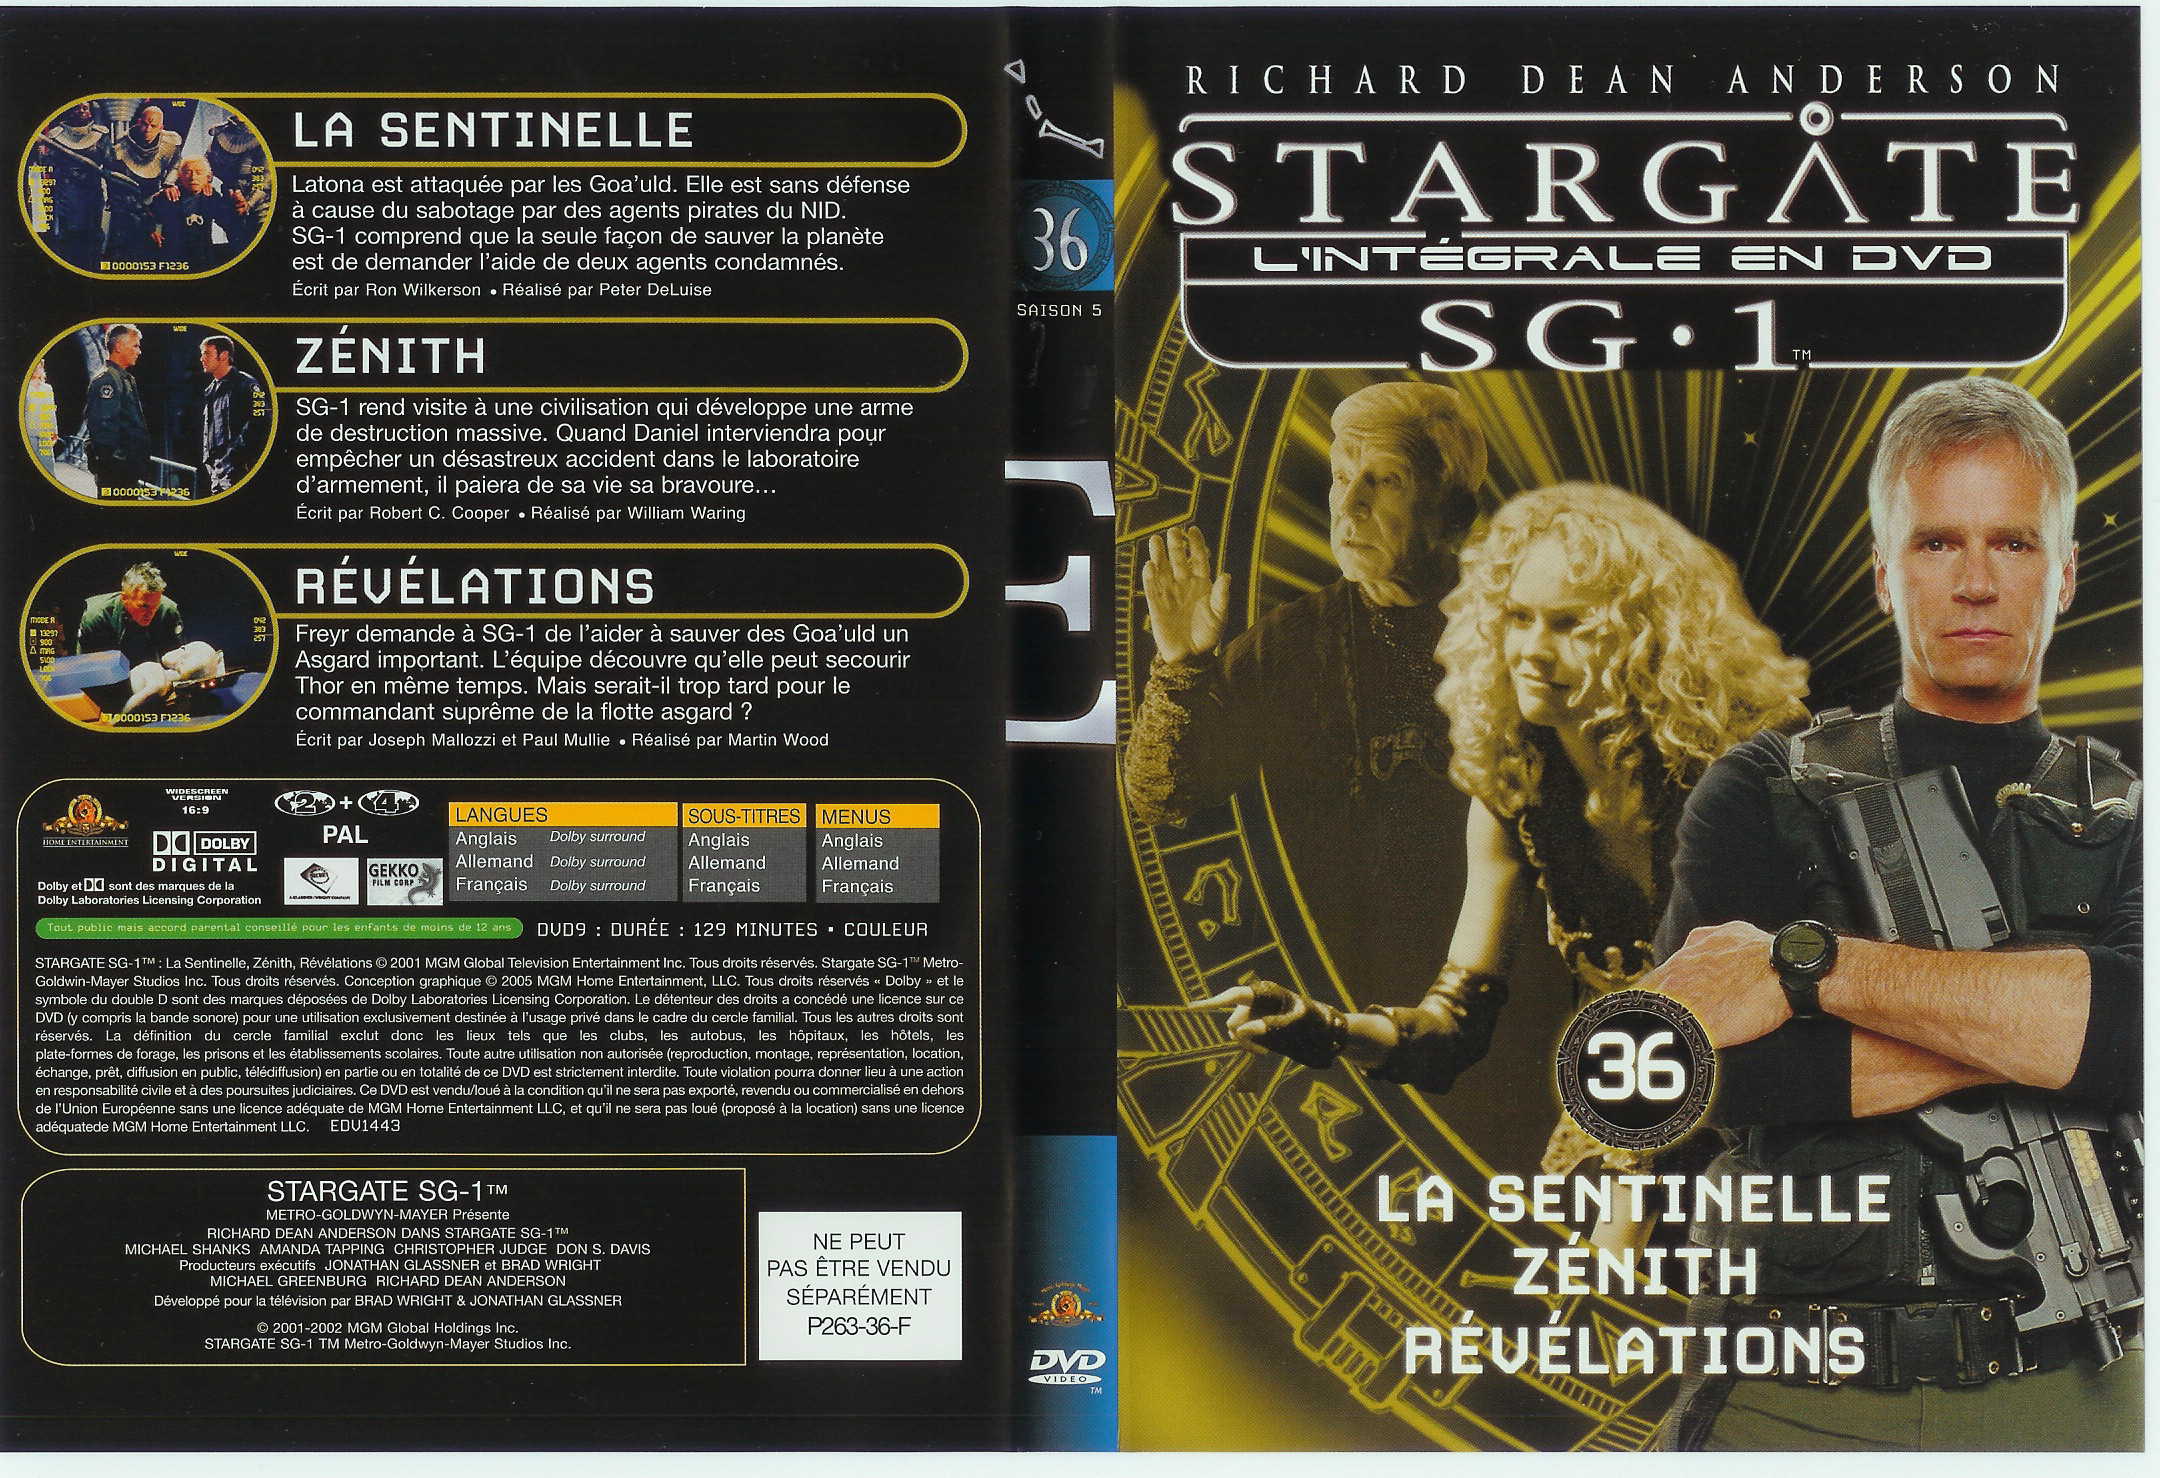 Jaquette DVD Stargate saison 5 vol 36